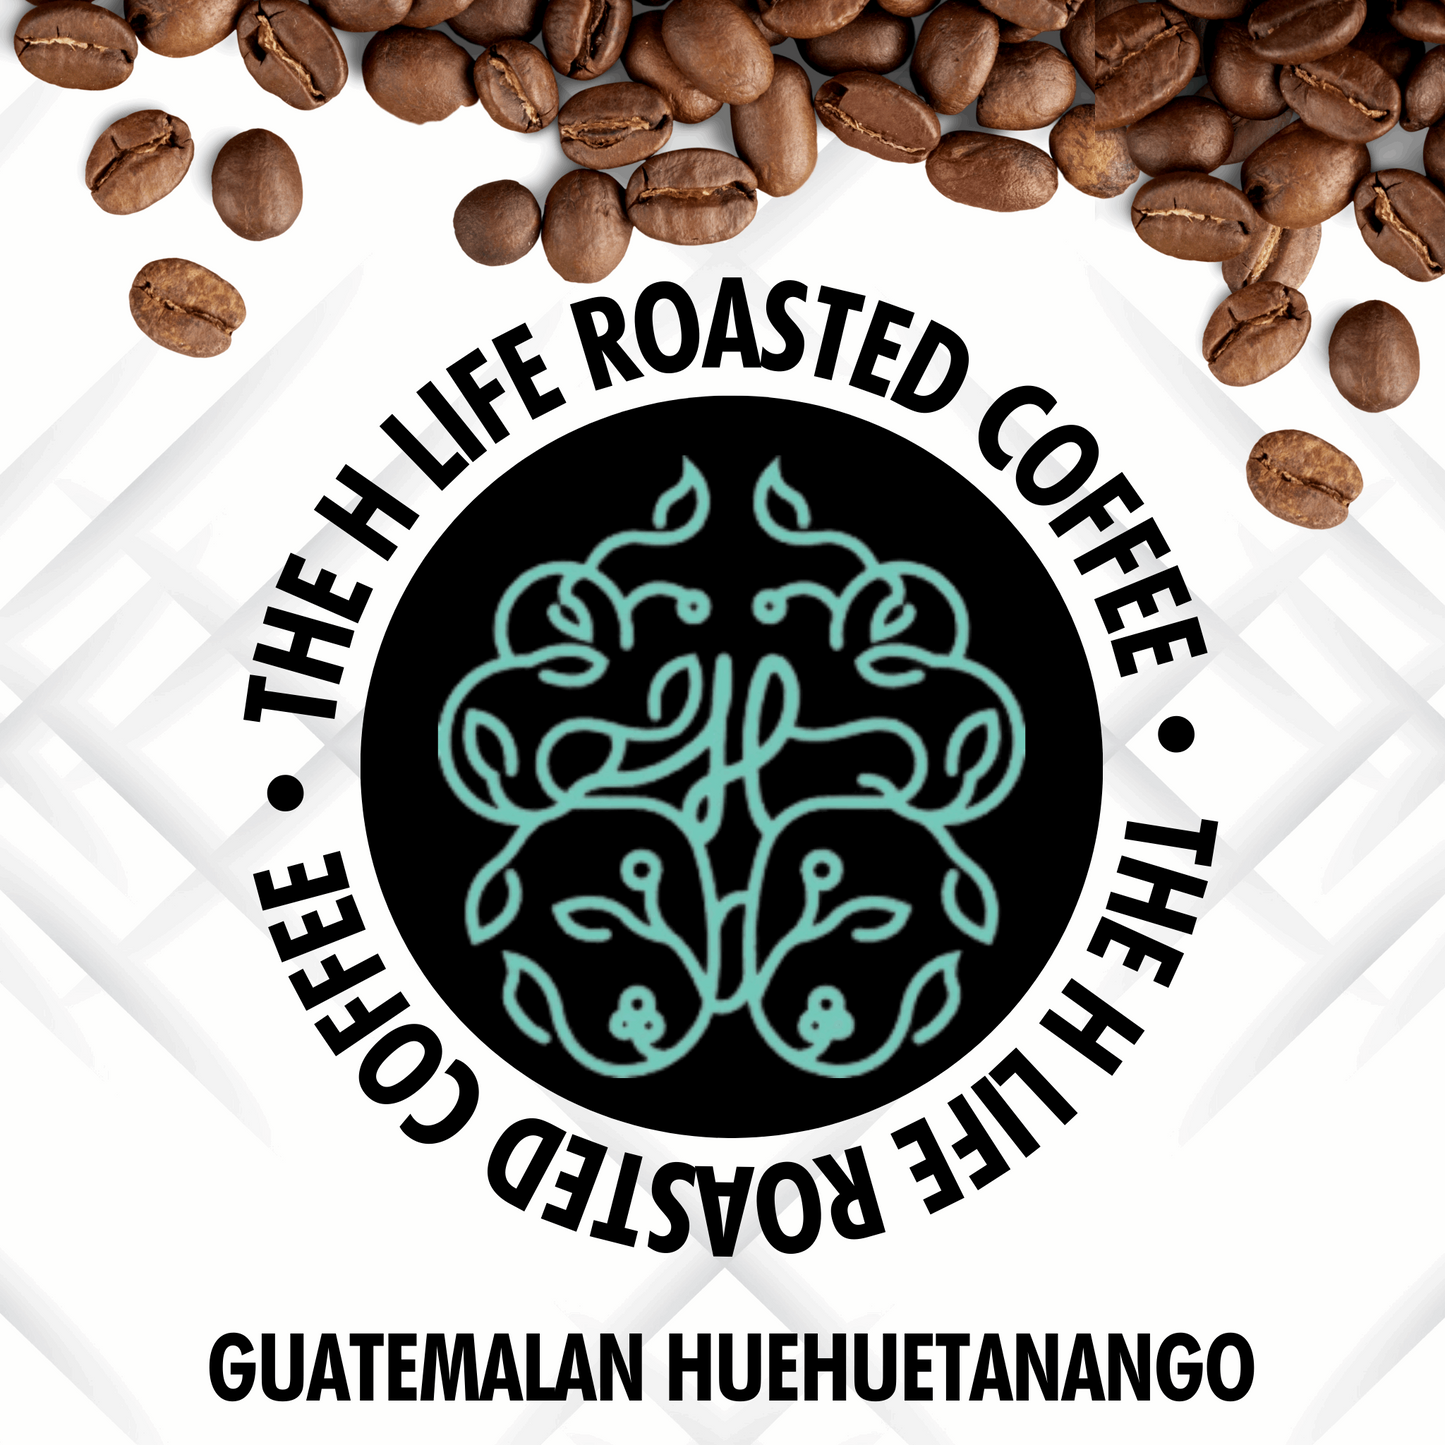 Guatemalan Huehuetanego Coffee